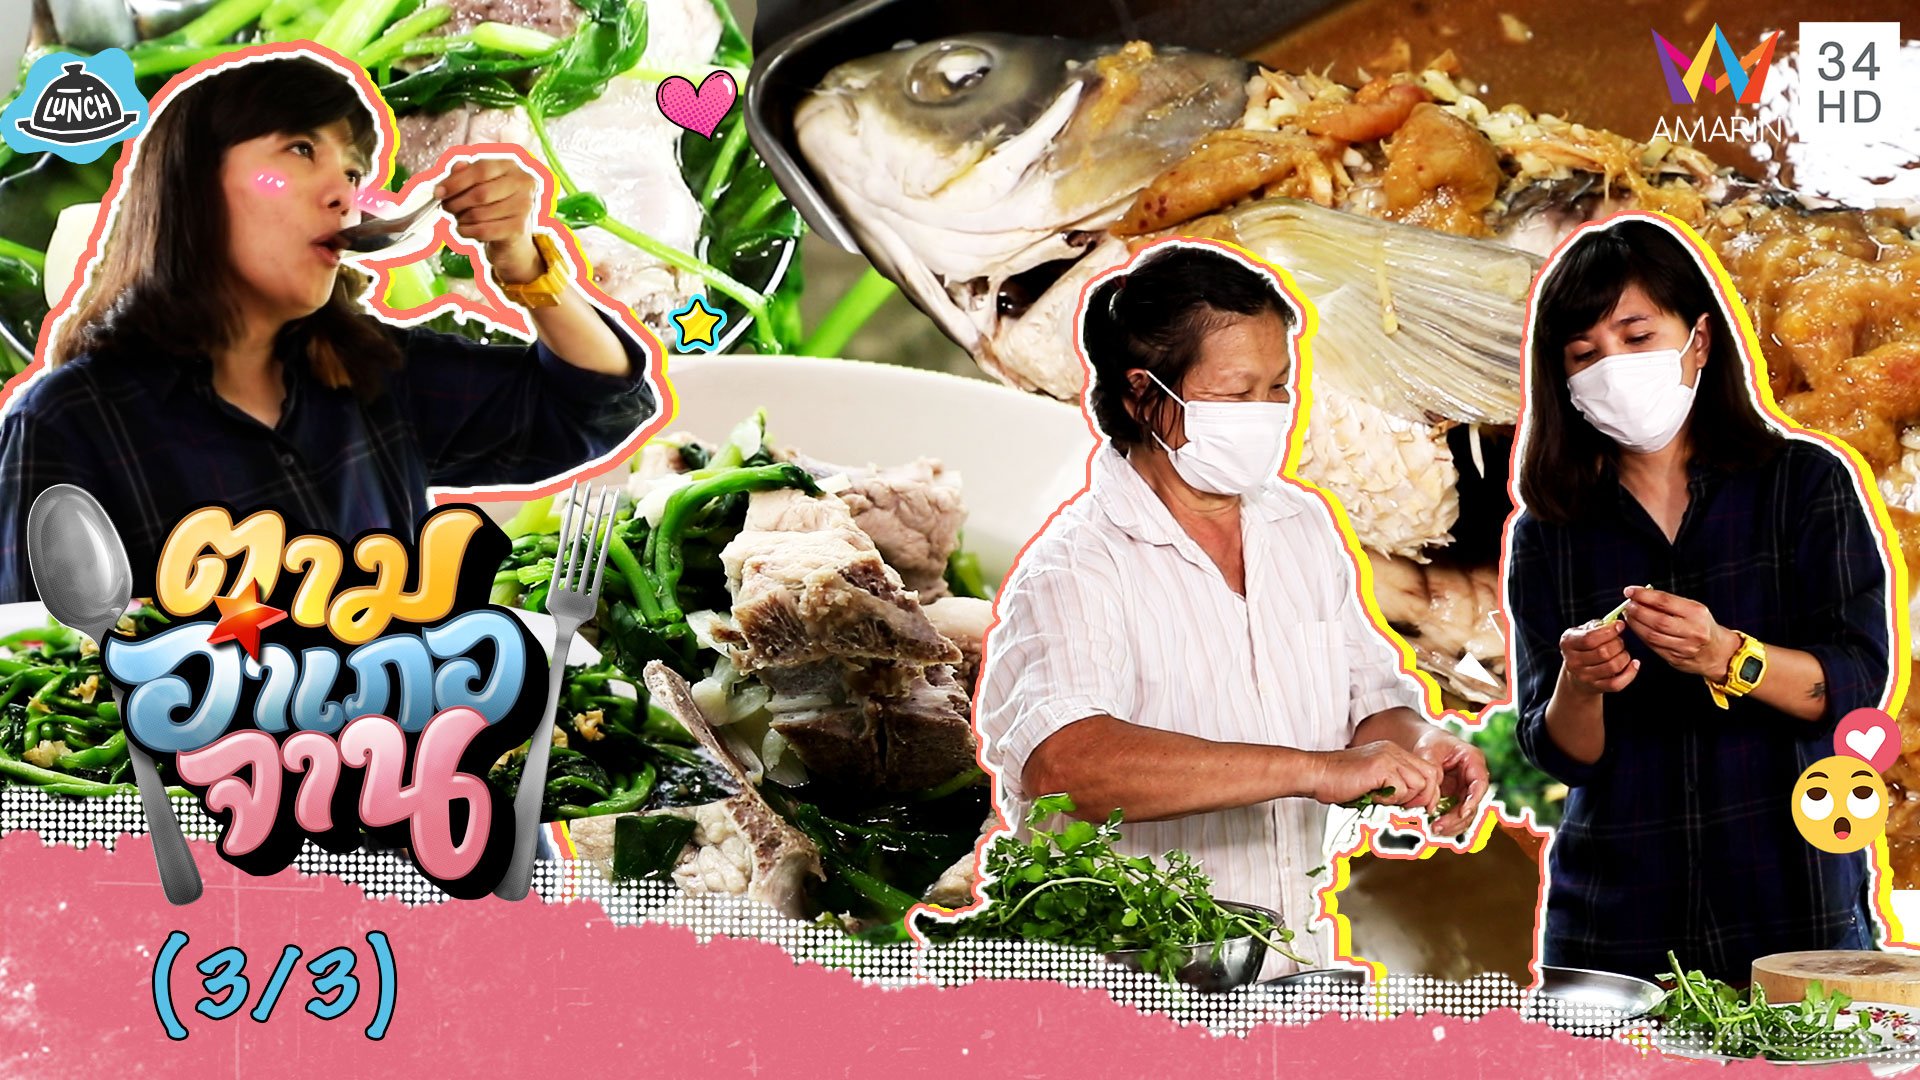 ทีเด็ดเมนูจากปลาจีน-ผักน้ำ 'ปลาจีนนึ่งบ๊วย-ผัดผักน้ำ' | ตามอำเภอจาน | 25 มิ.ย. 65 (3/3) | AMARIN TVHD34